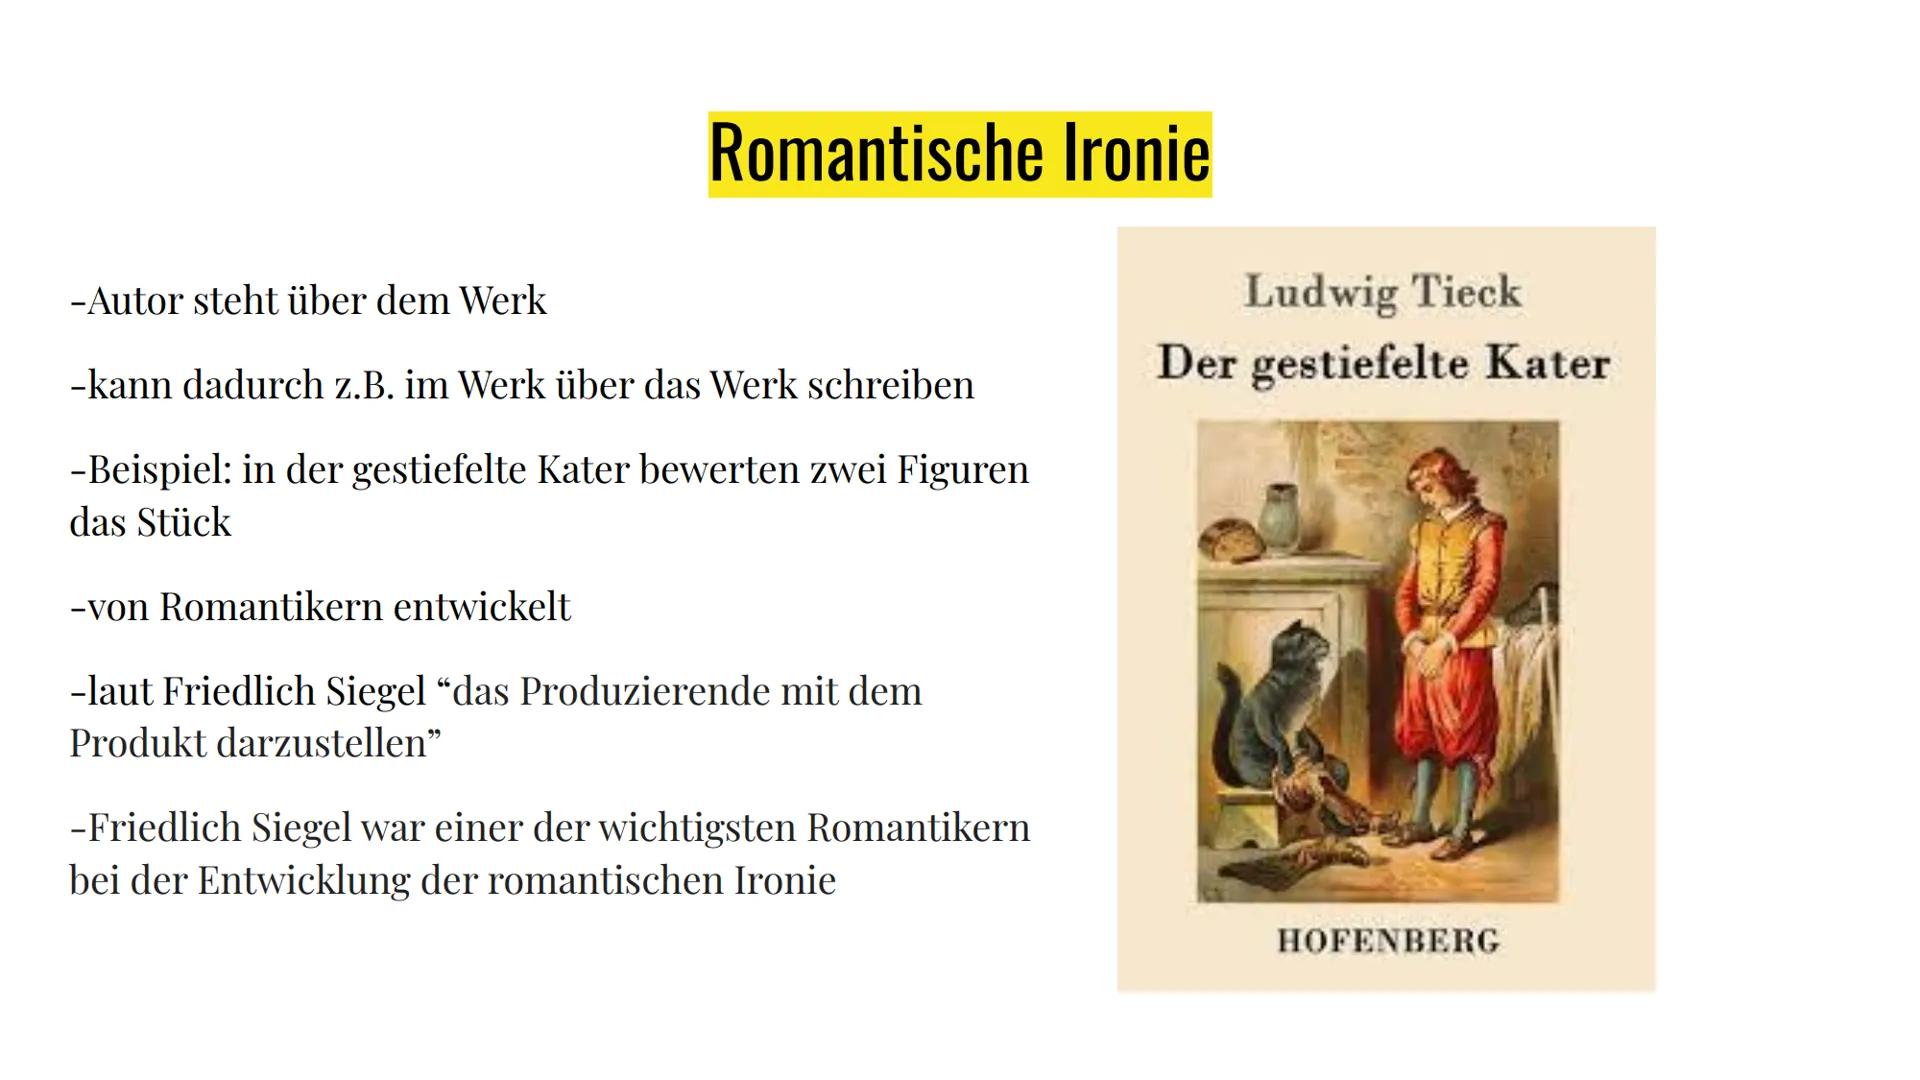 Die Merkmale der
Romantik Inhaltsangabe
Themen:
- Weltflucht
- Hinwendung zur Natur
- Verklärung des Mittelalters
- Rückzug in Fantasie- und